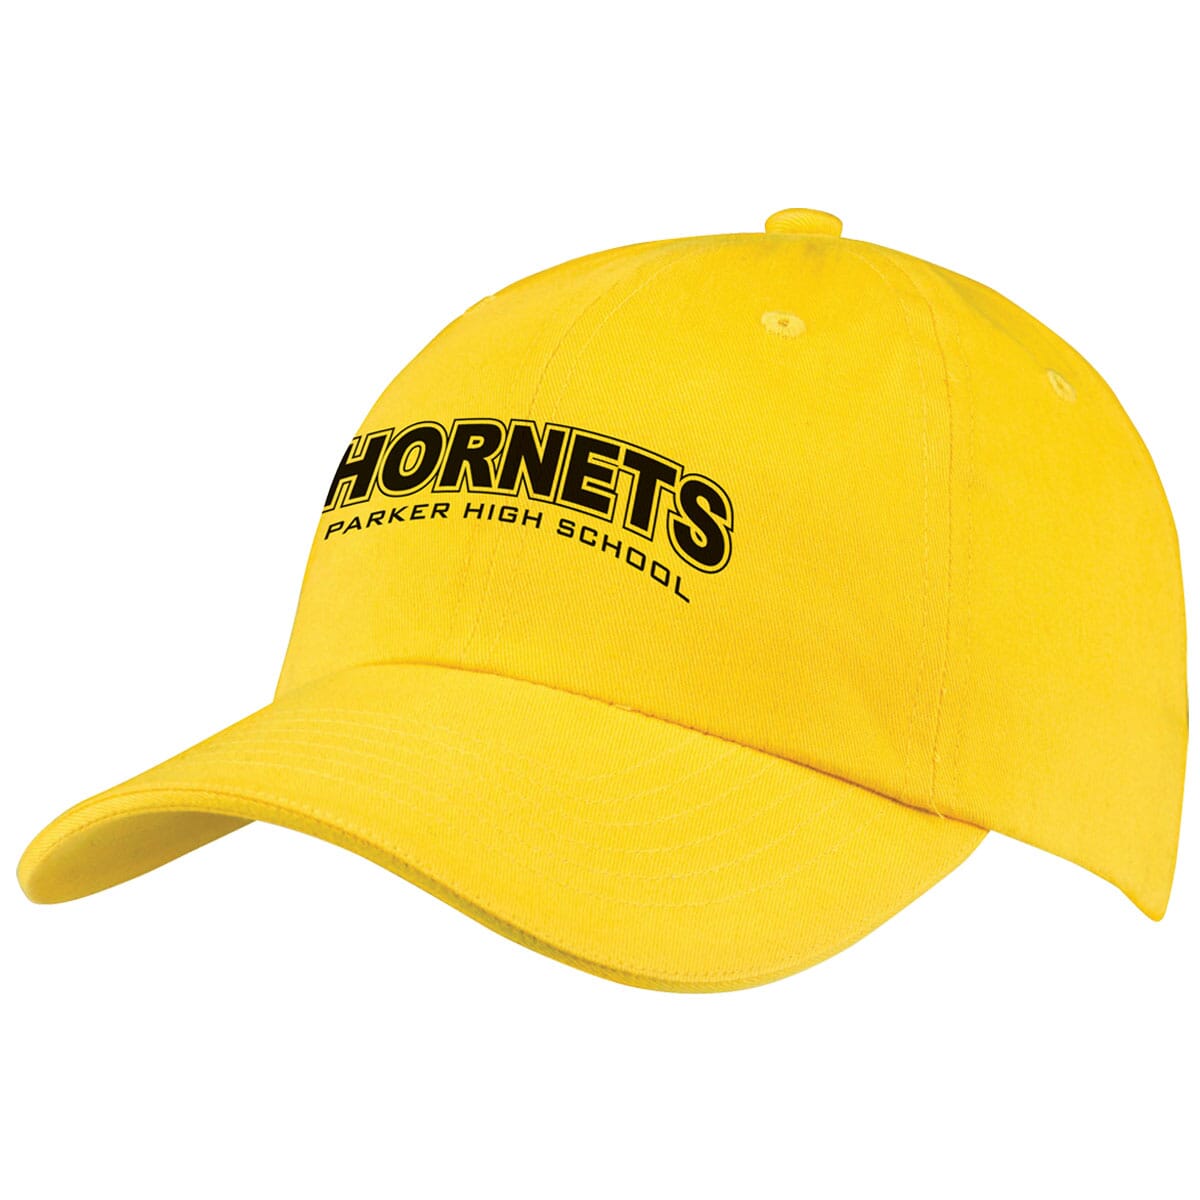 Customized baseball cap